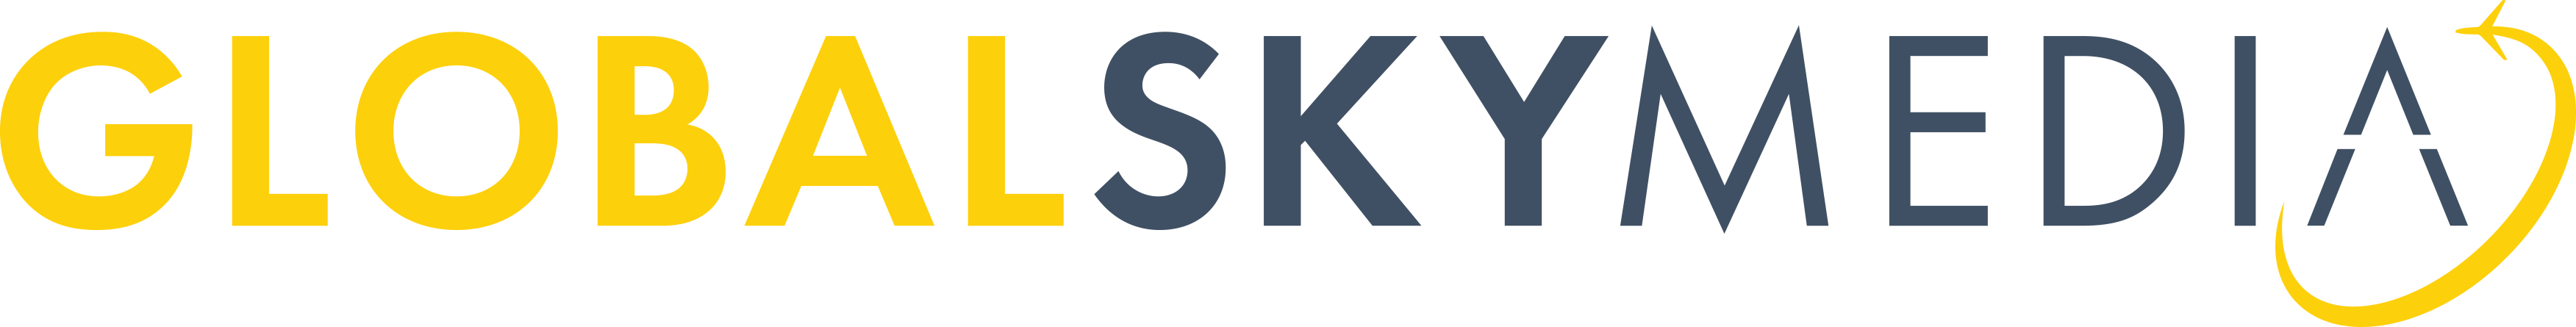 Global Sky Media logo